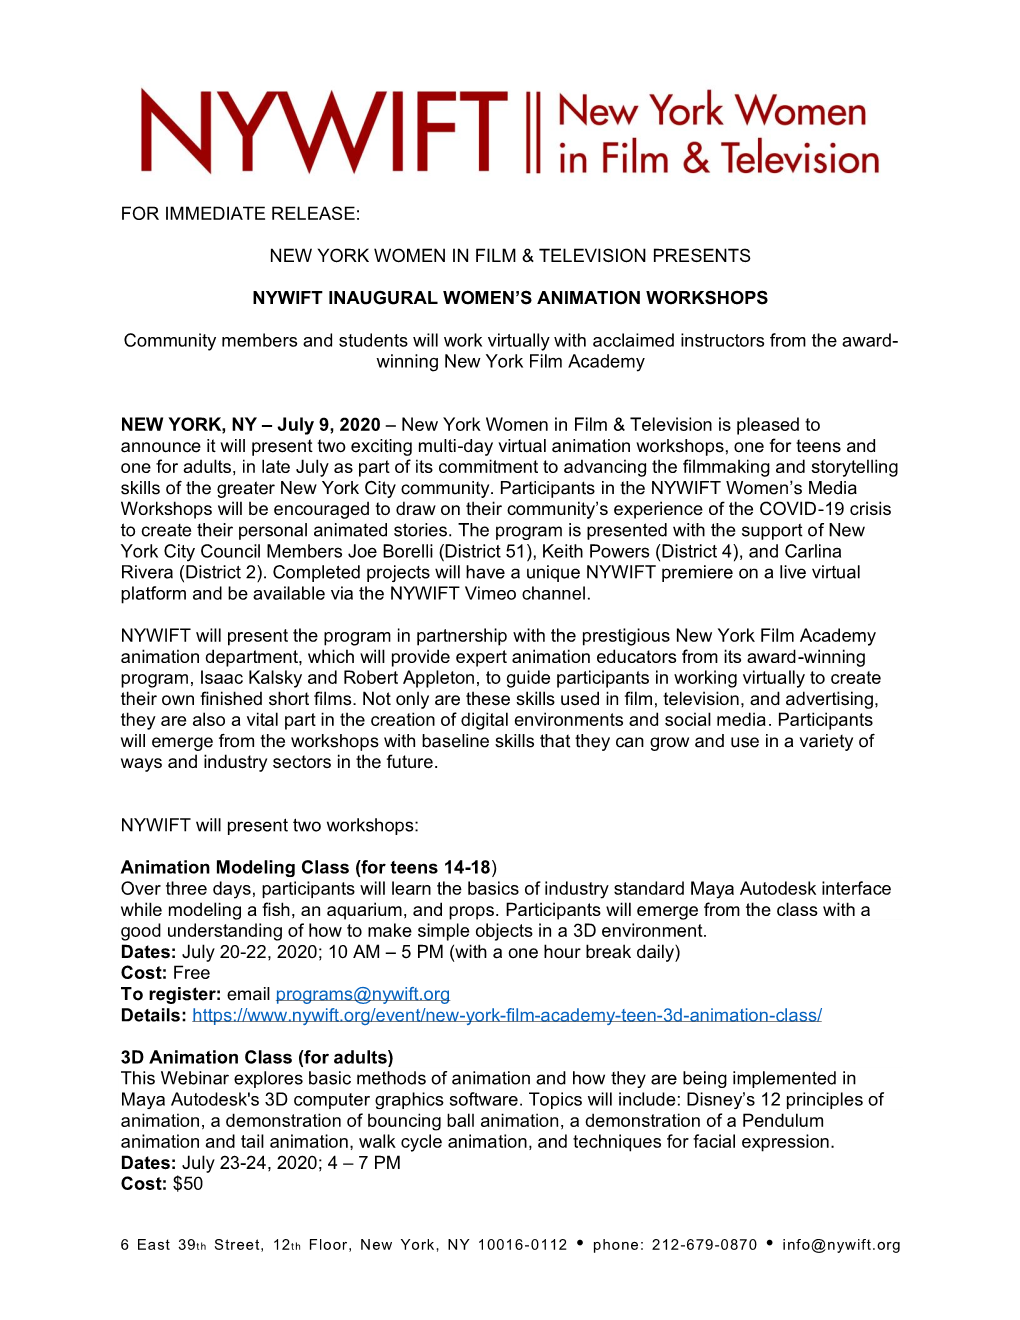 For Immediate Release: New York Women in Film